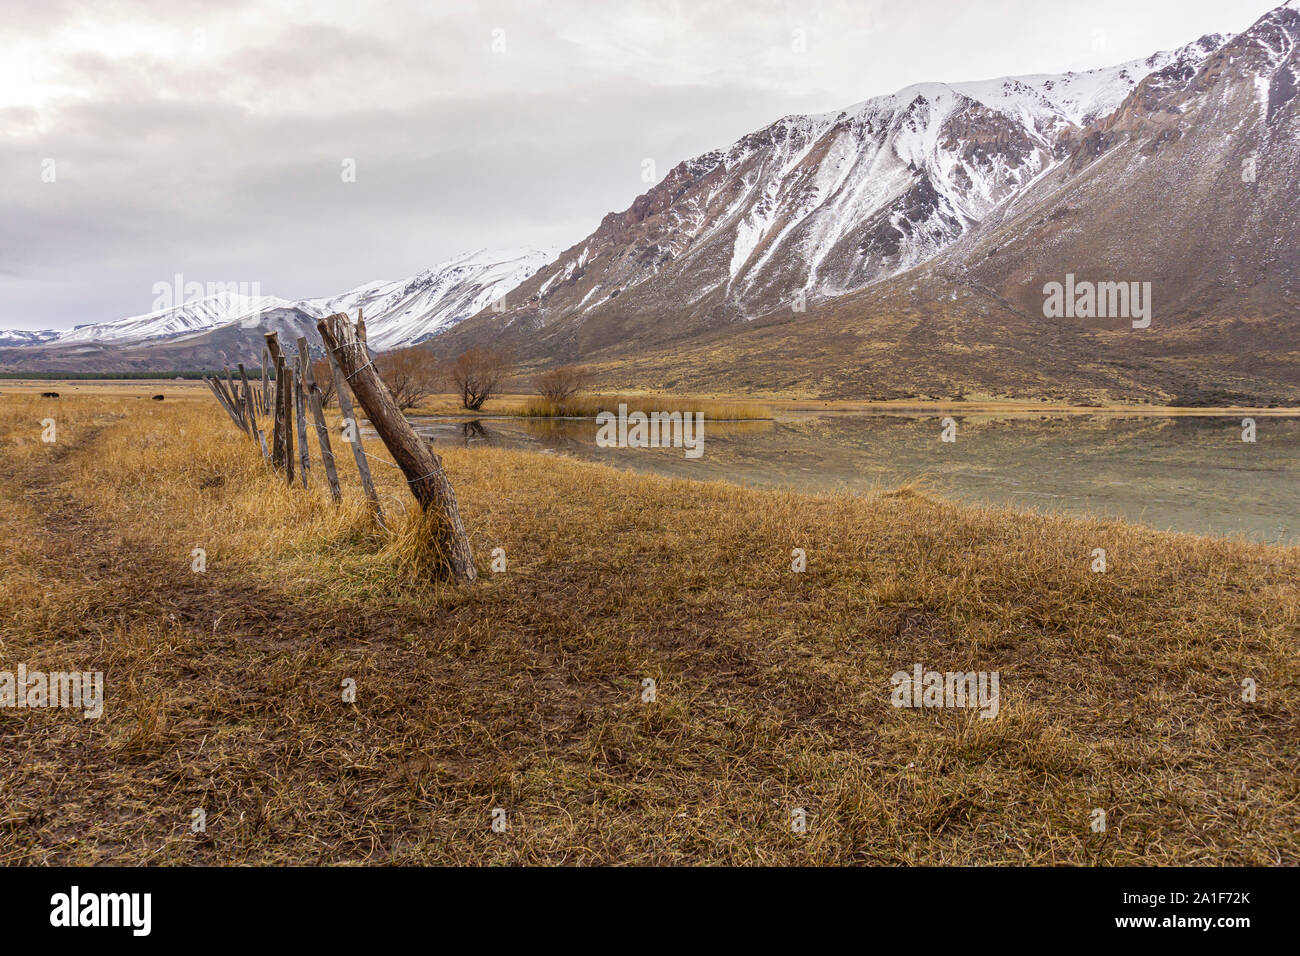 Vue sur la scène de l'image contre les montagnes couvertes de neige pendant la saison d'hiver en Patagonie, Argentine Banque D'Images